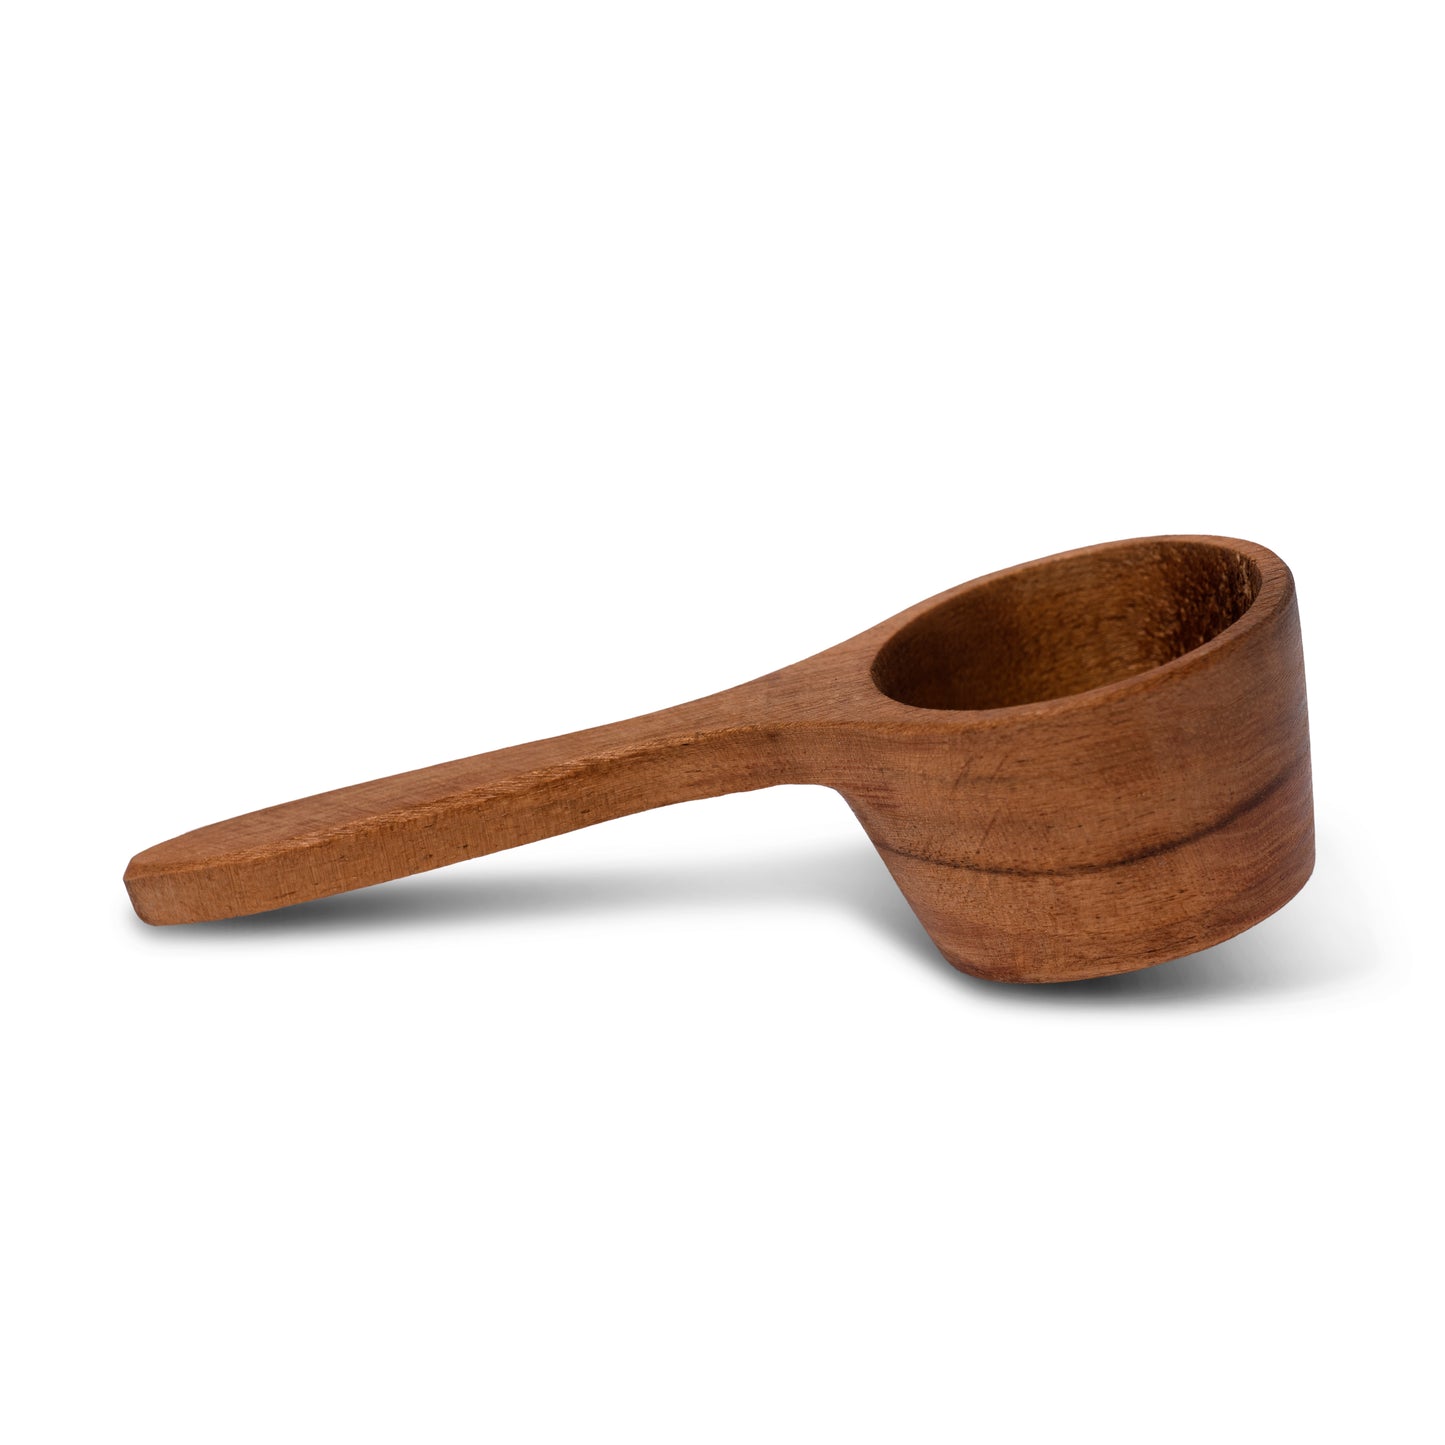 Acacia Wood Scoop Spoon